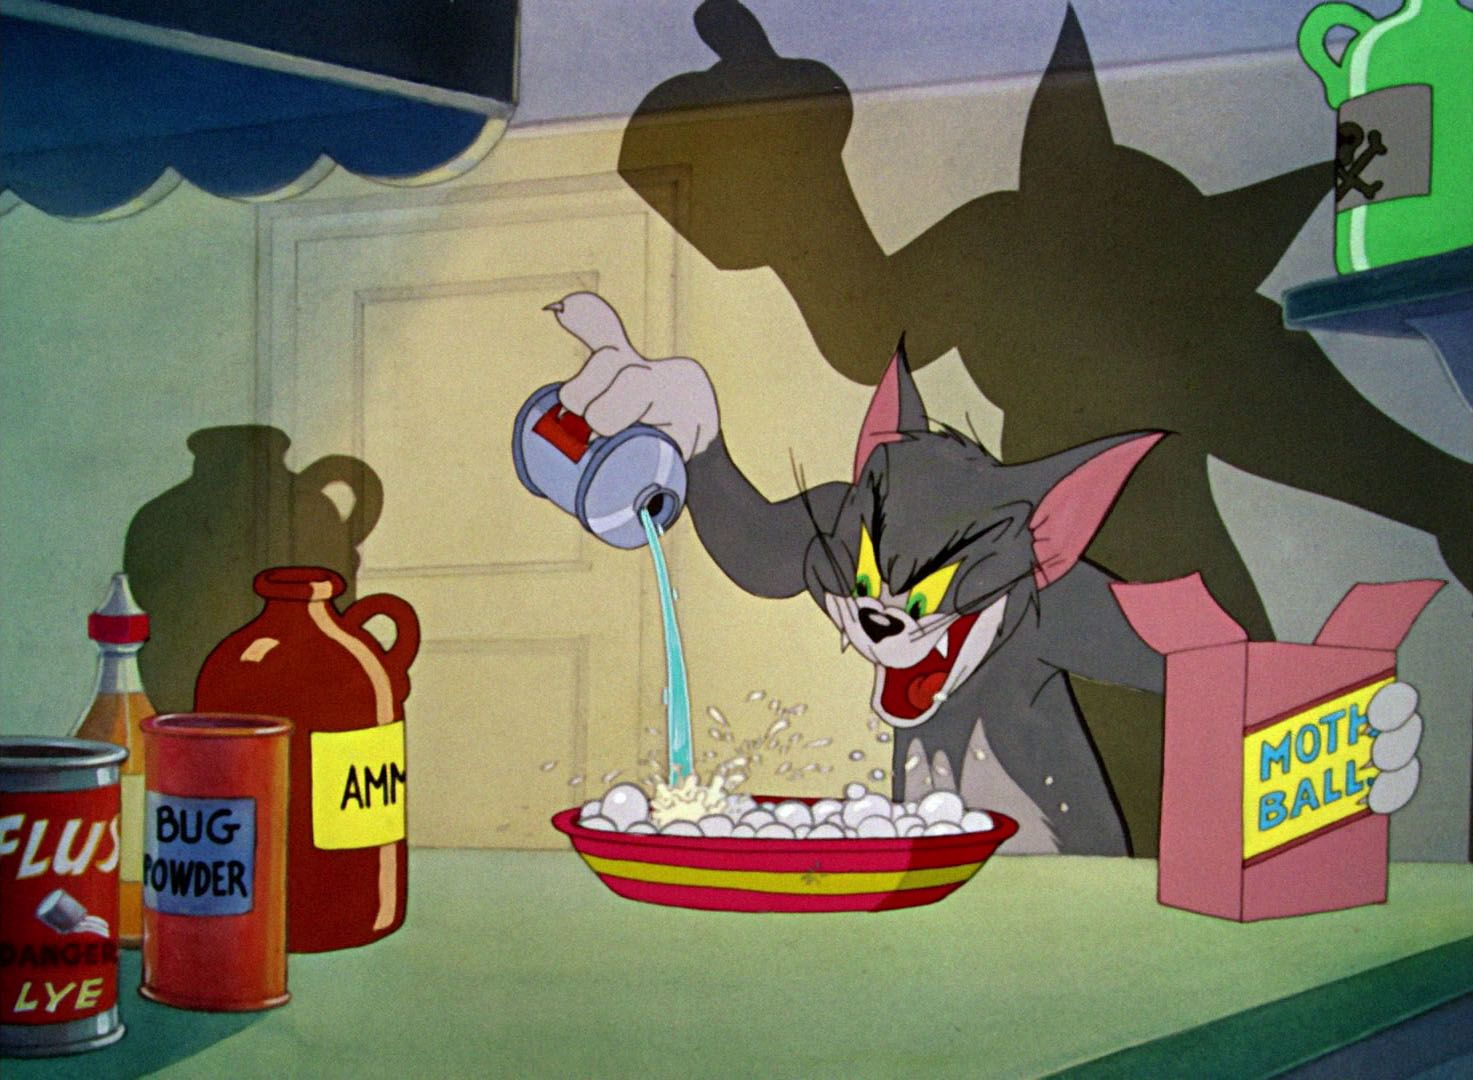 78 Tahun Tom And Jerry 12 Fakta Unik Yang Banyak Orang Gak Tahu